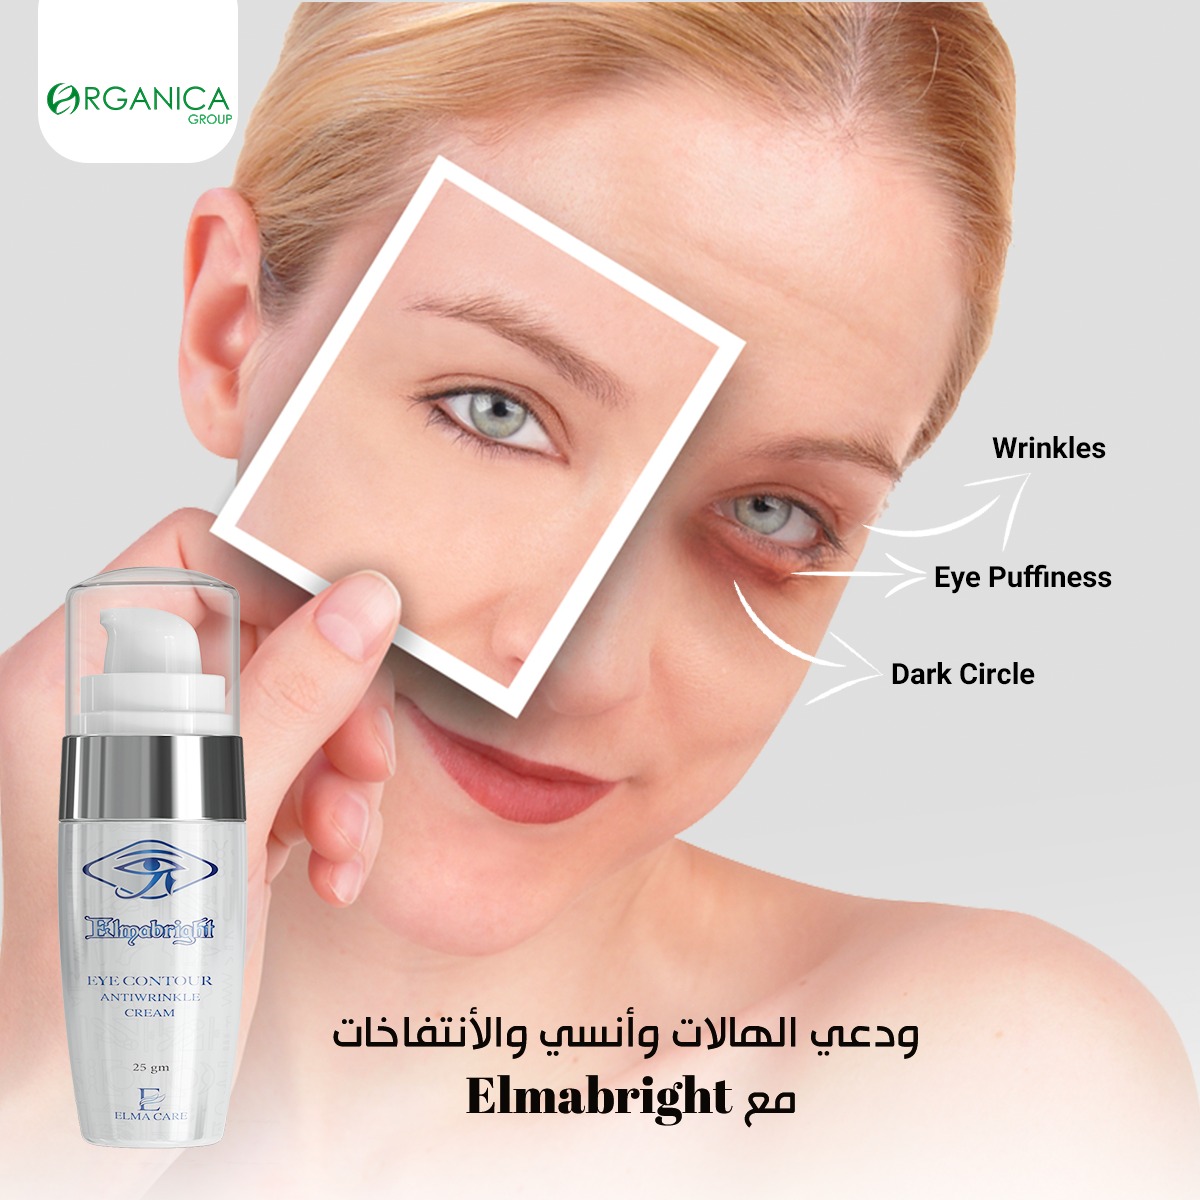 كريم المابرايت اي كونتور  Elmabright Eye contour cream توحيد لون البشرة وتفتيح لون الجلد حول العينين